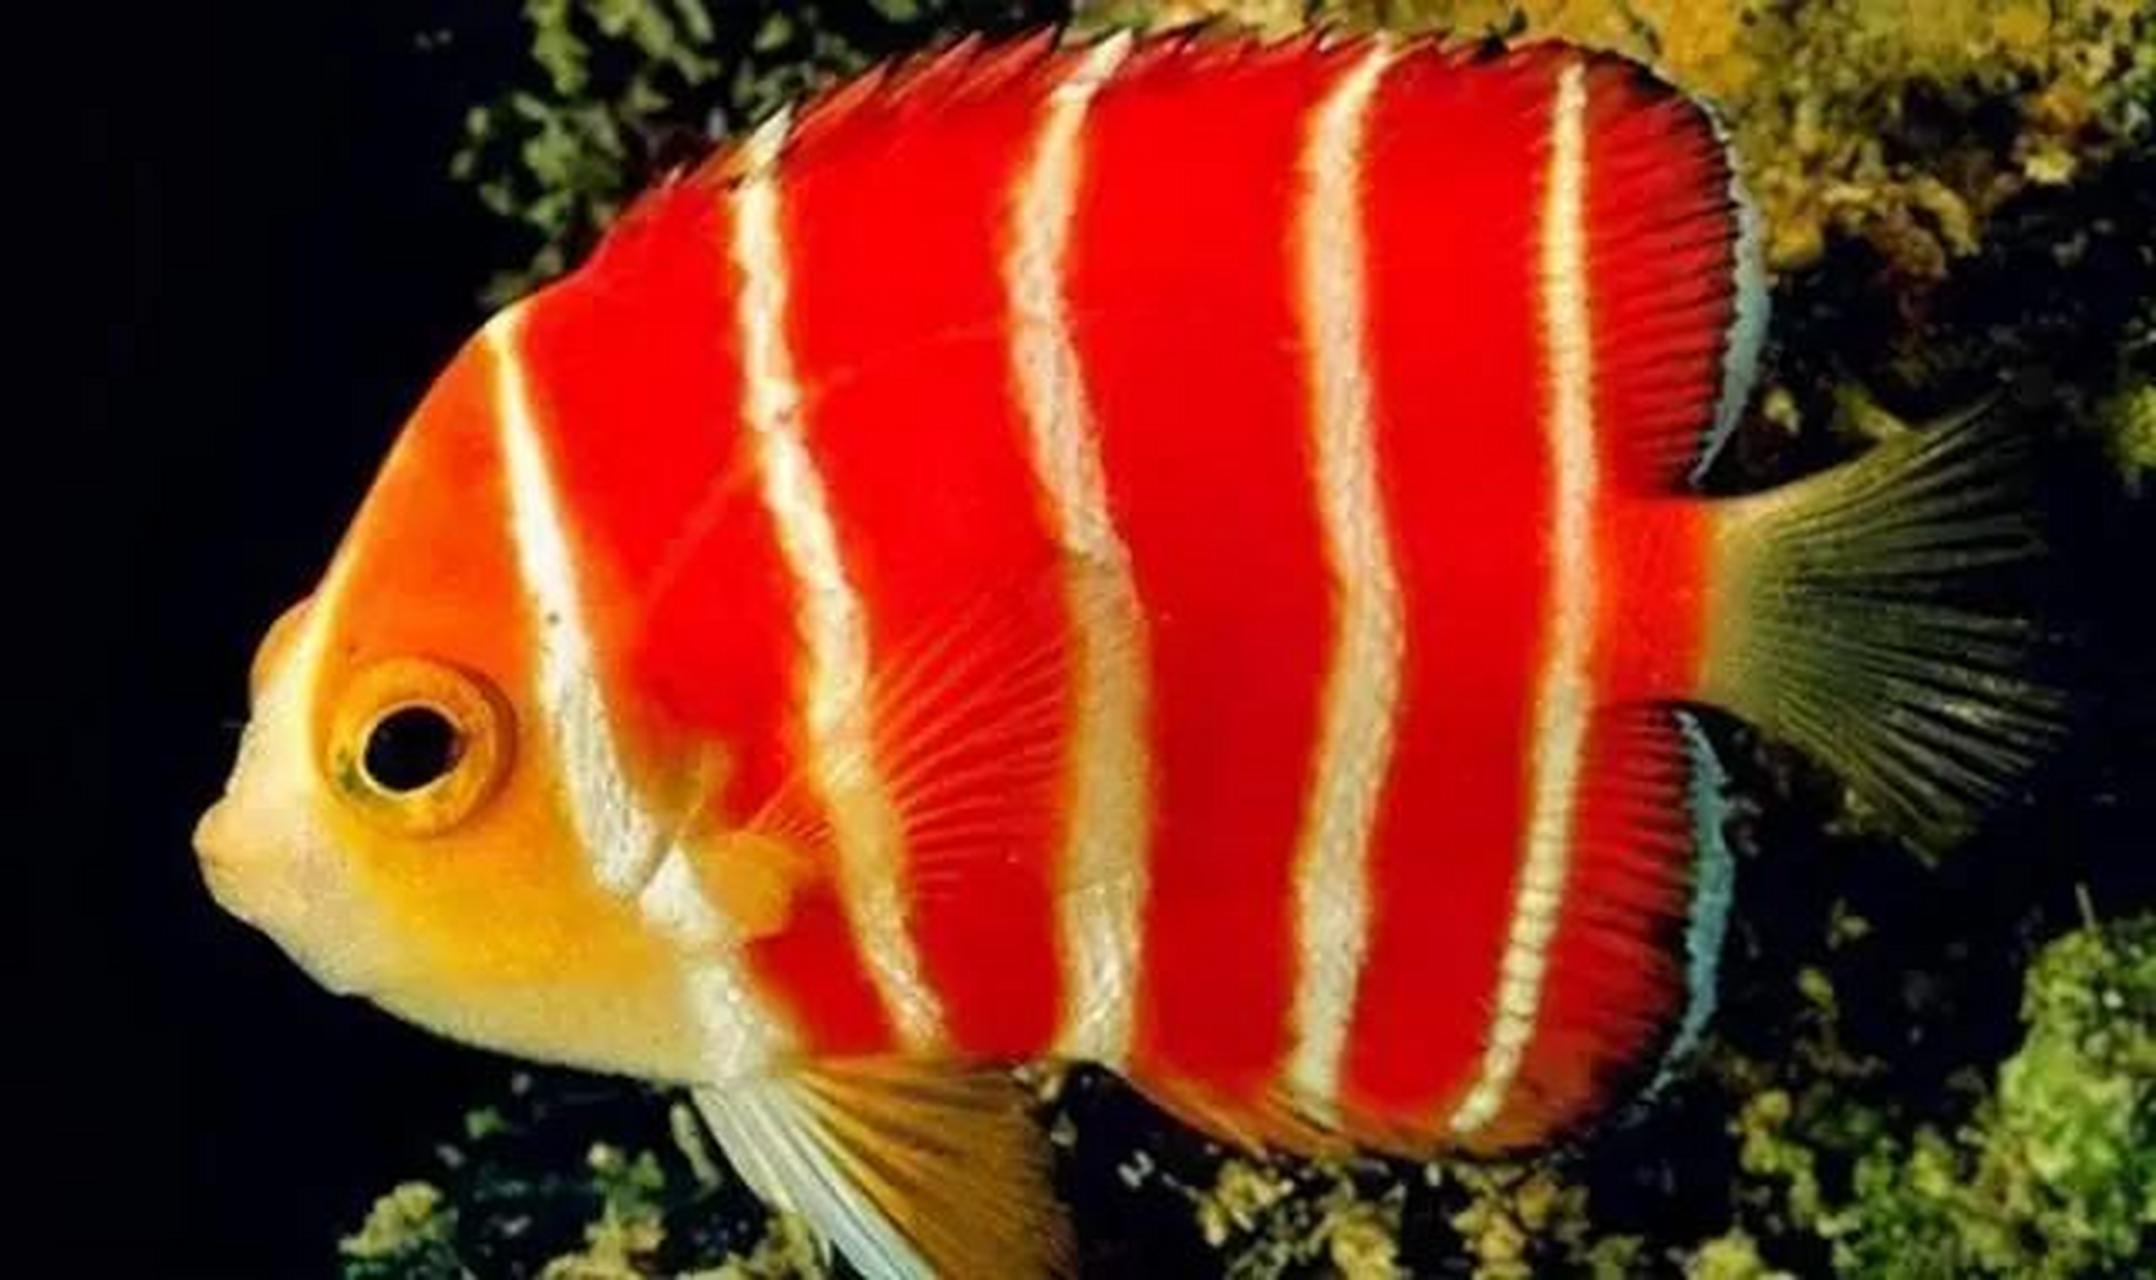 红薄荷神仙又名君子仙,体色为红白黄间隔,非常独特,肉食性鱼类,栖息于